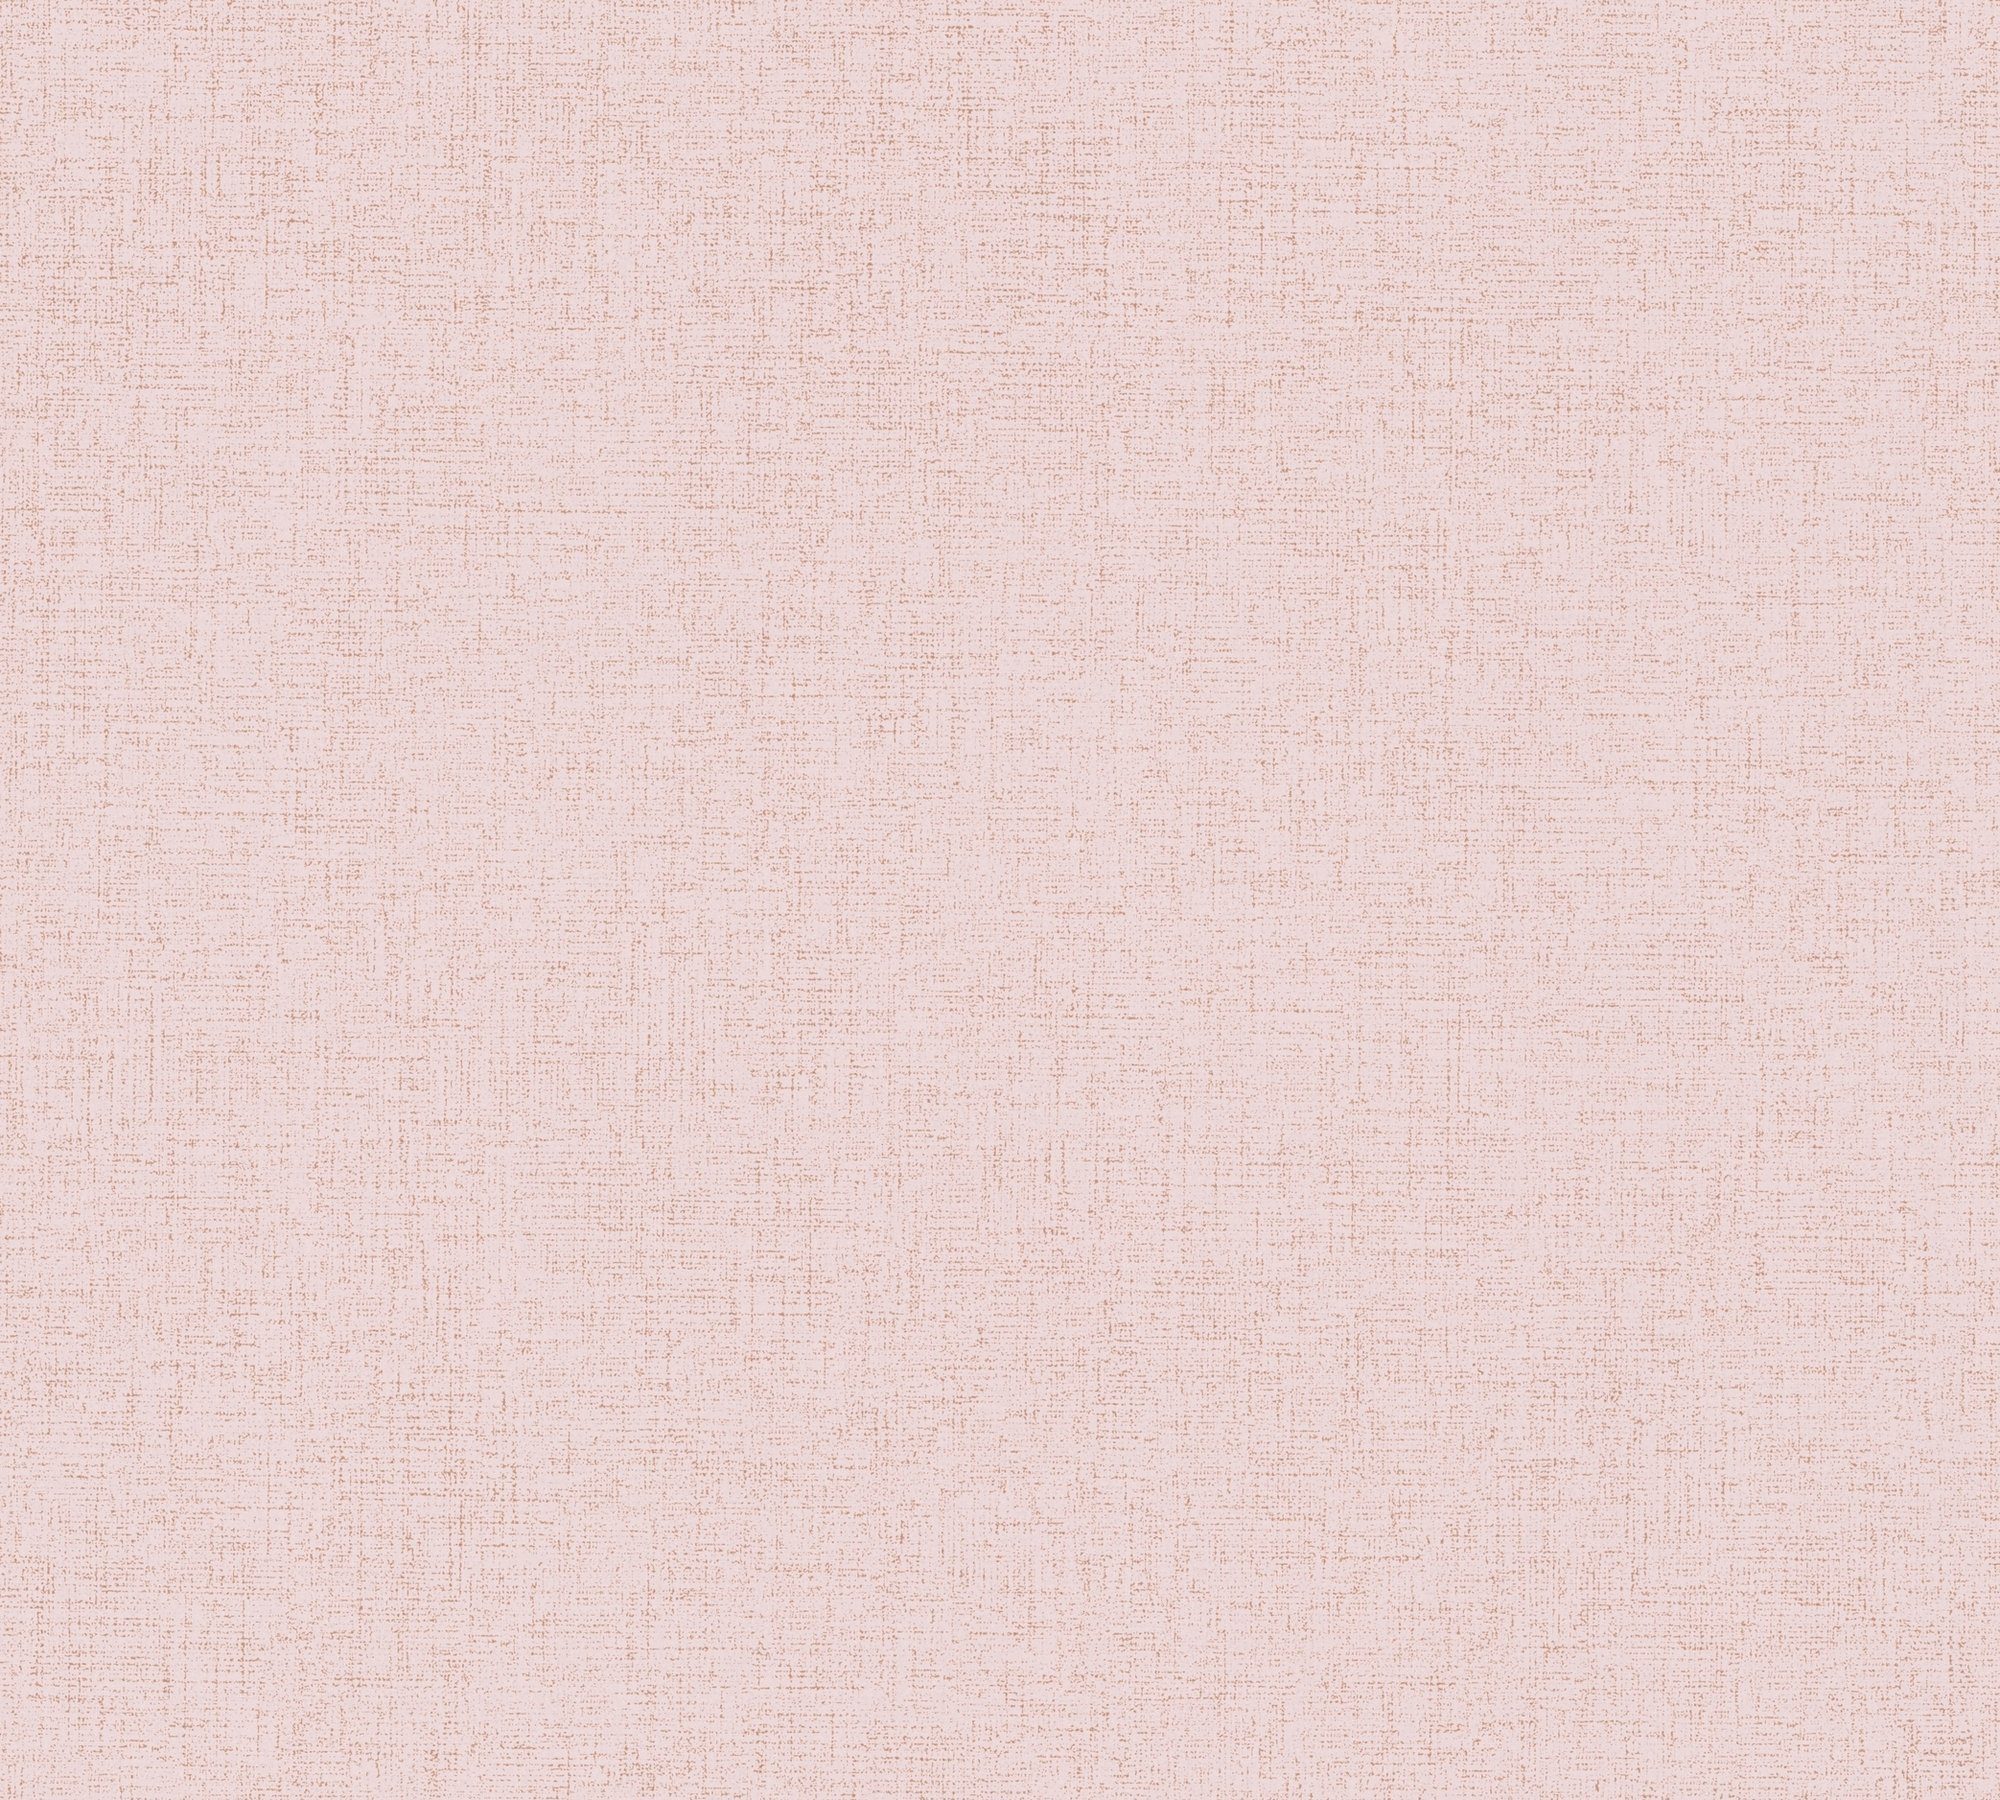 A.S. Création Vliestapete Farbeinsatz, Tapete New Uni Elegance, unifarben rosa mit Einfarbig aufgeschäumt